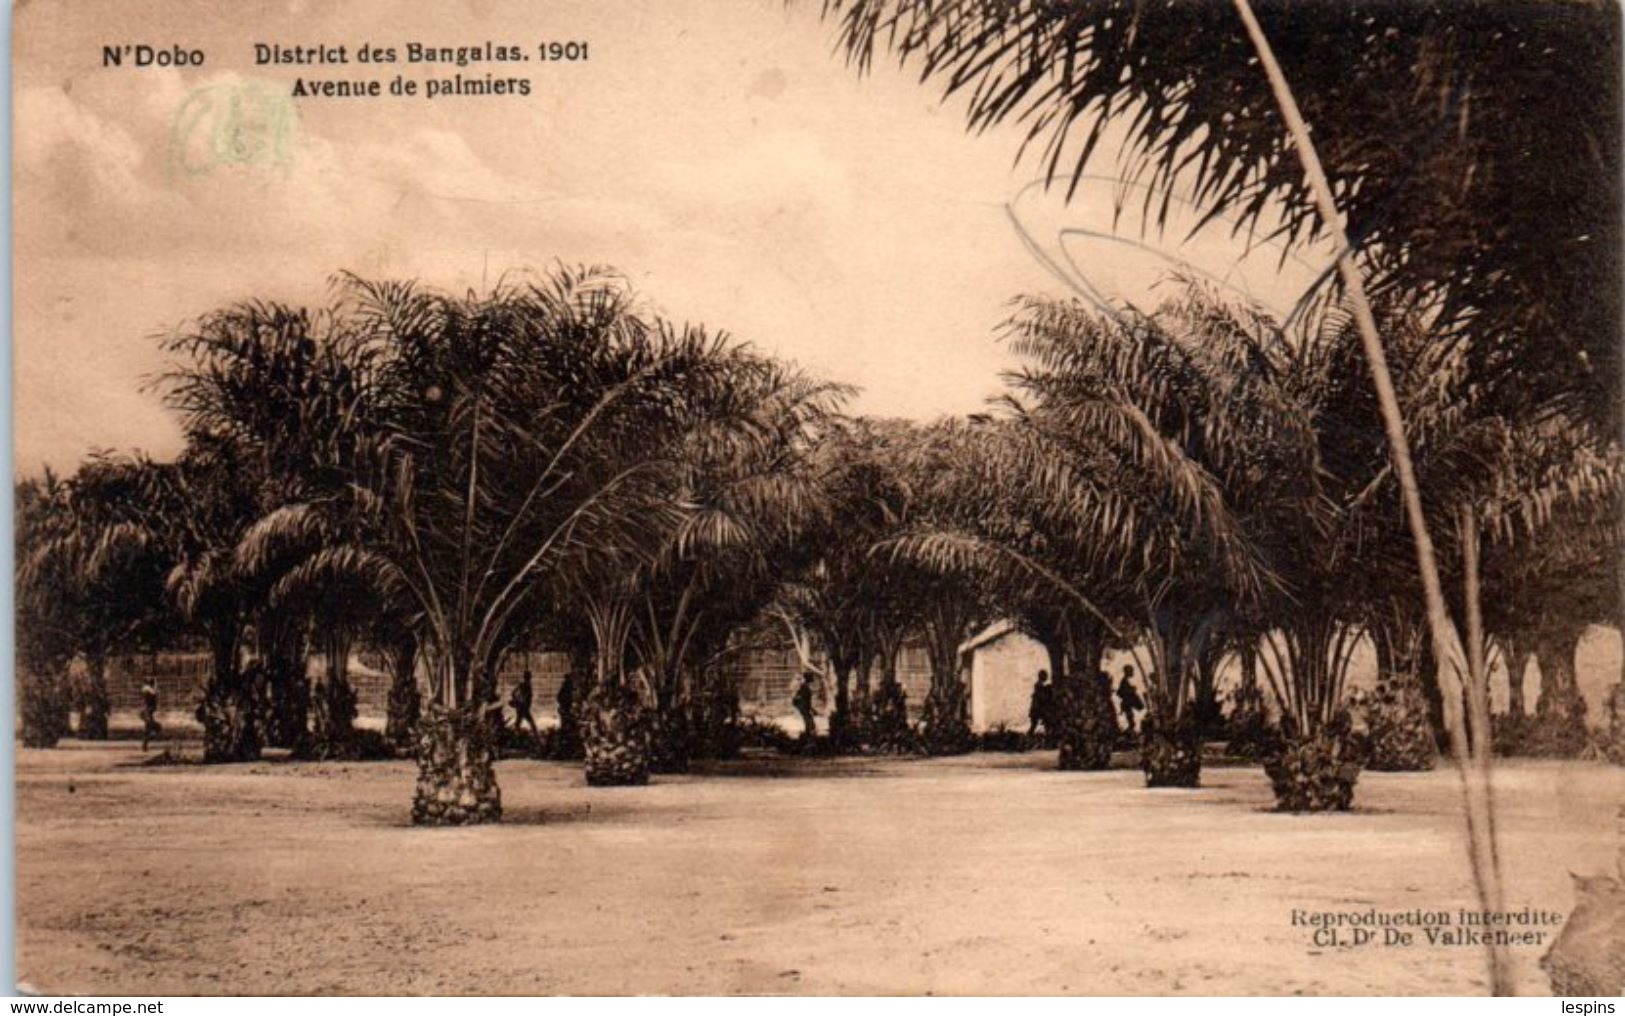 AFRIQUE -- CONGO - N'Dobo - District Des Bangalas 1901 - Congo Belge